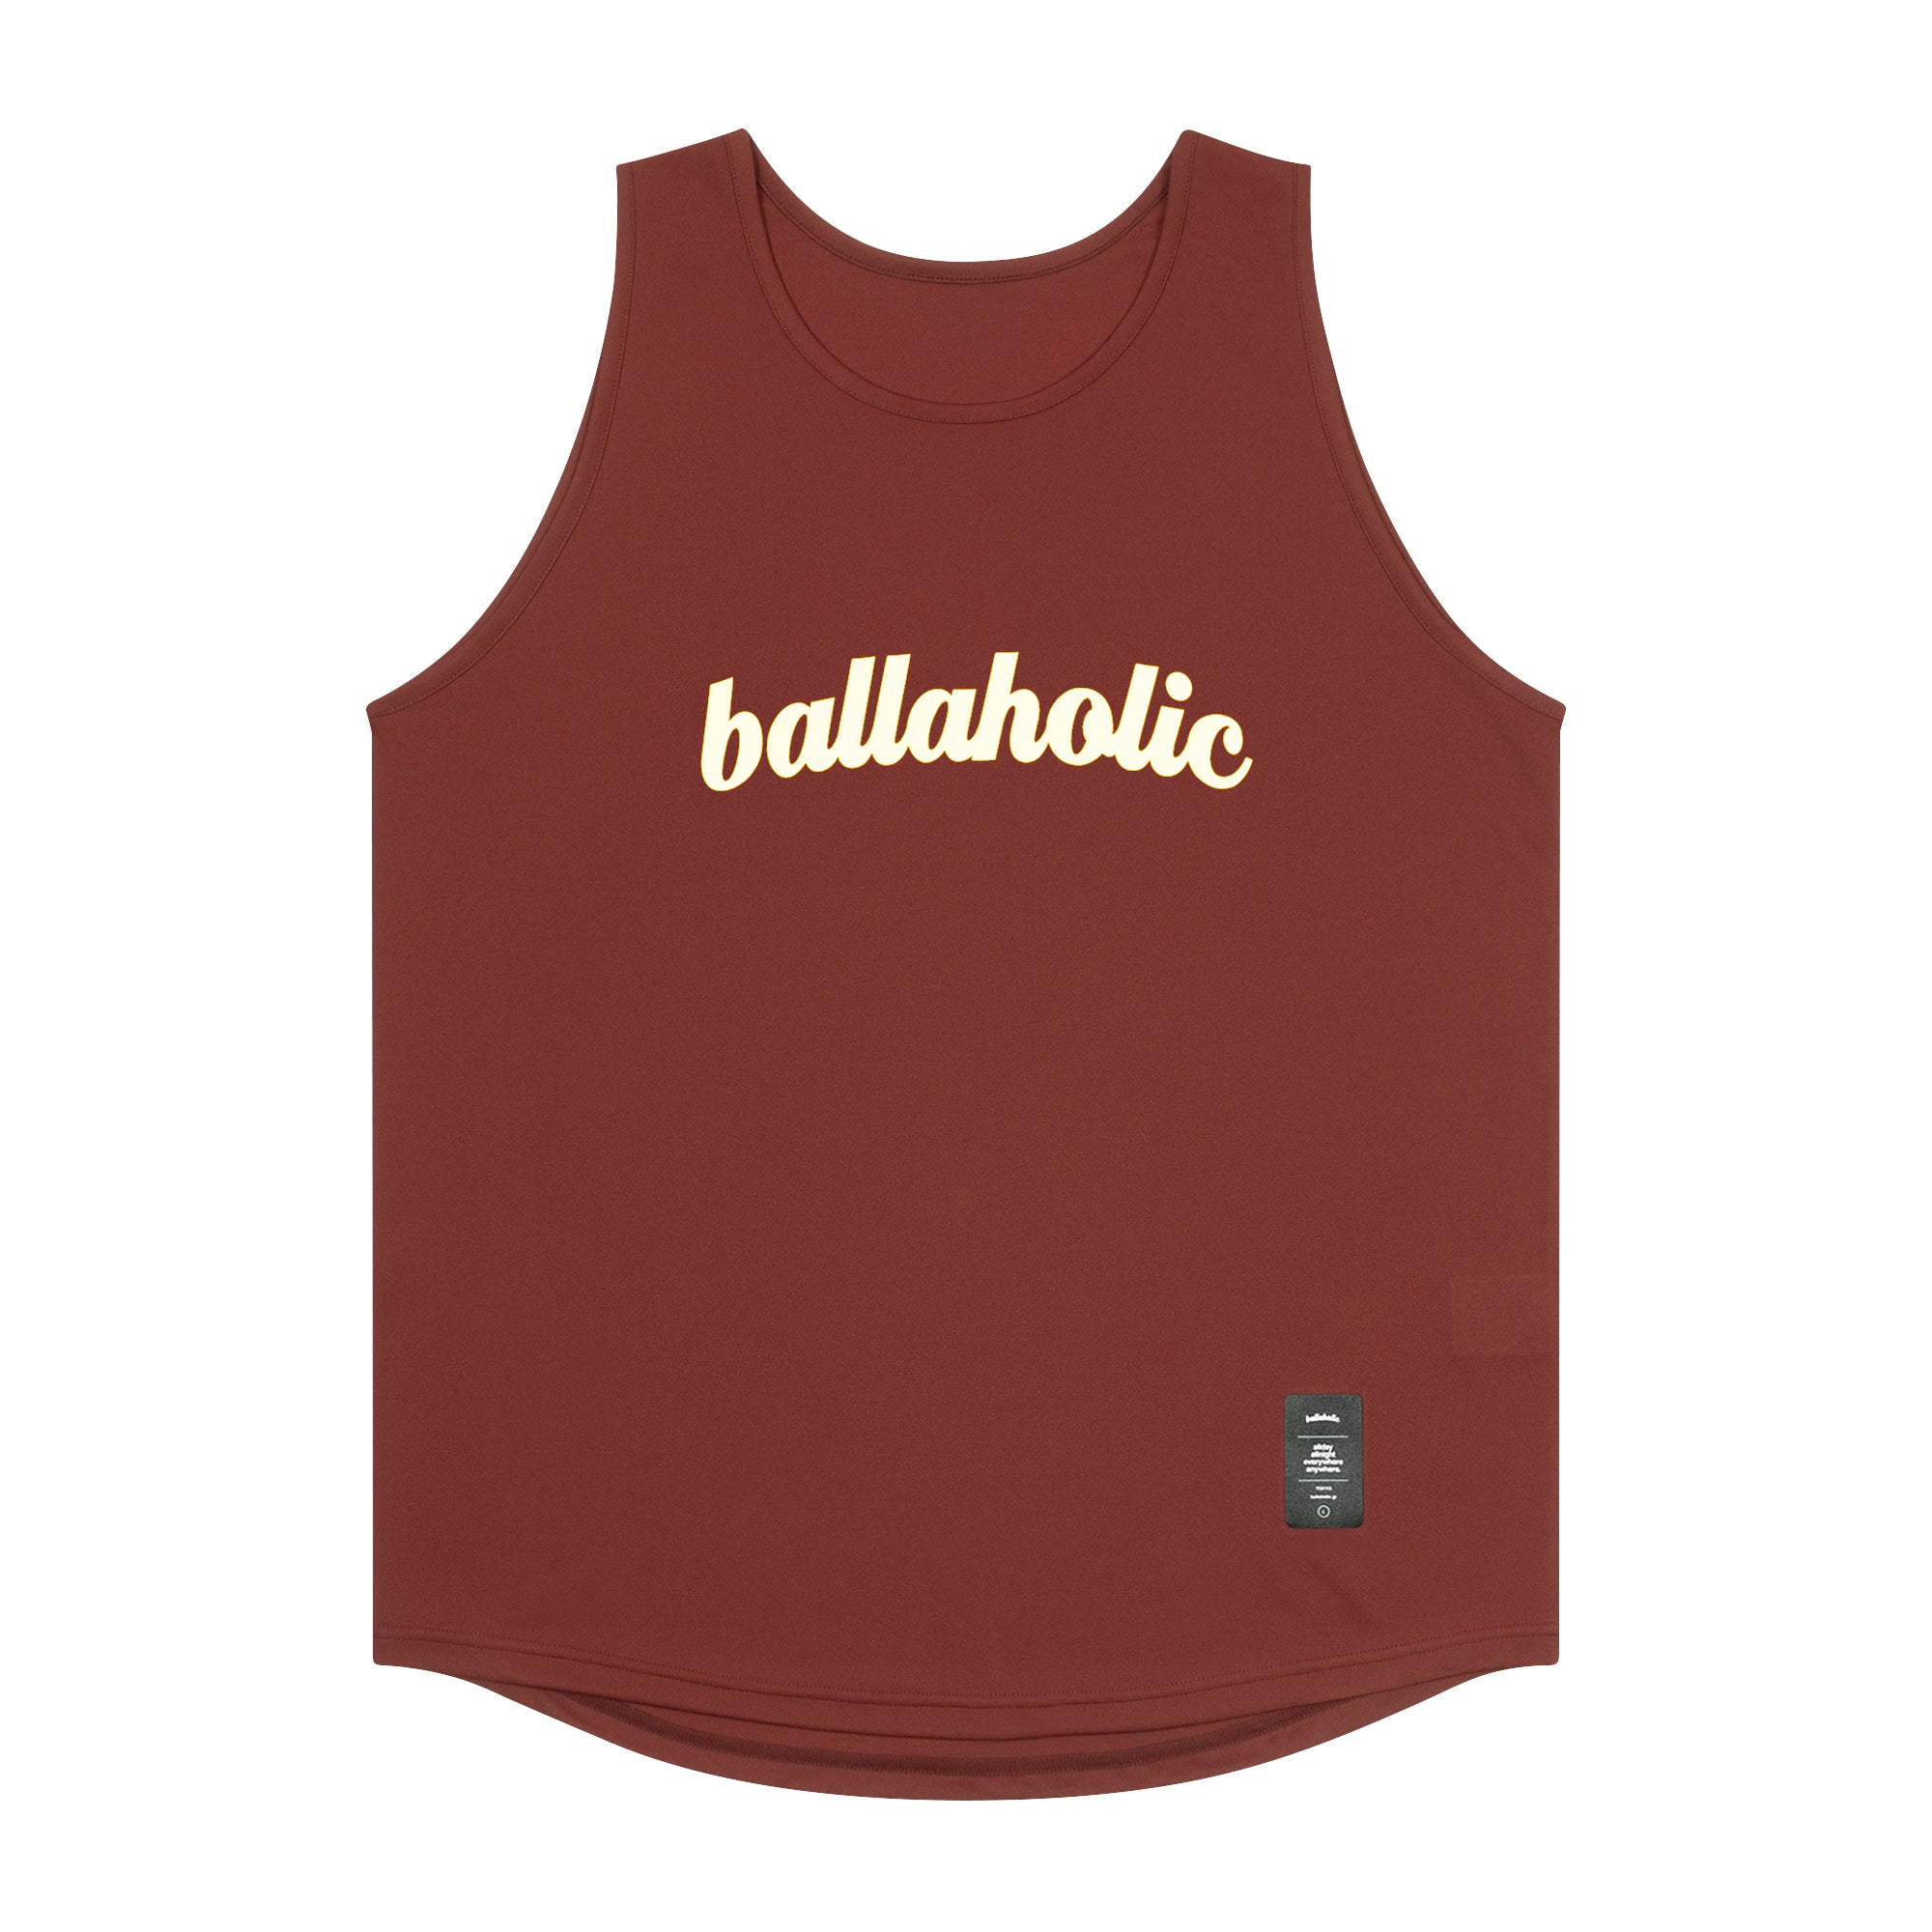 ballaholic Logo Tank top 6枚セット白地にオレンジロゴの商品と